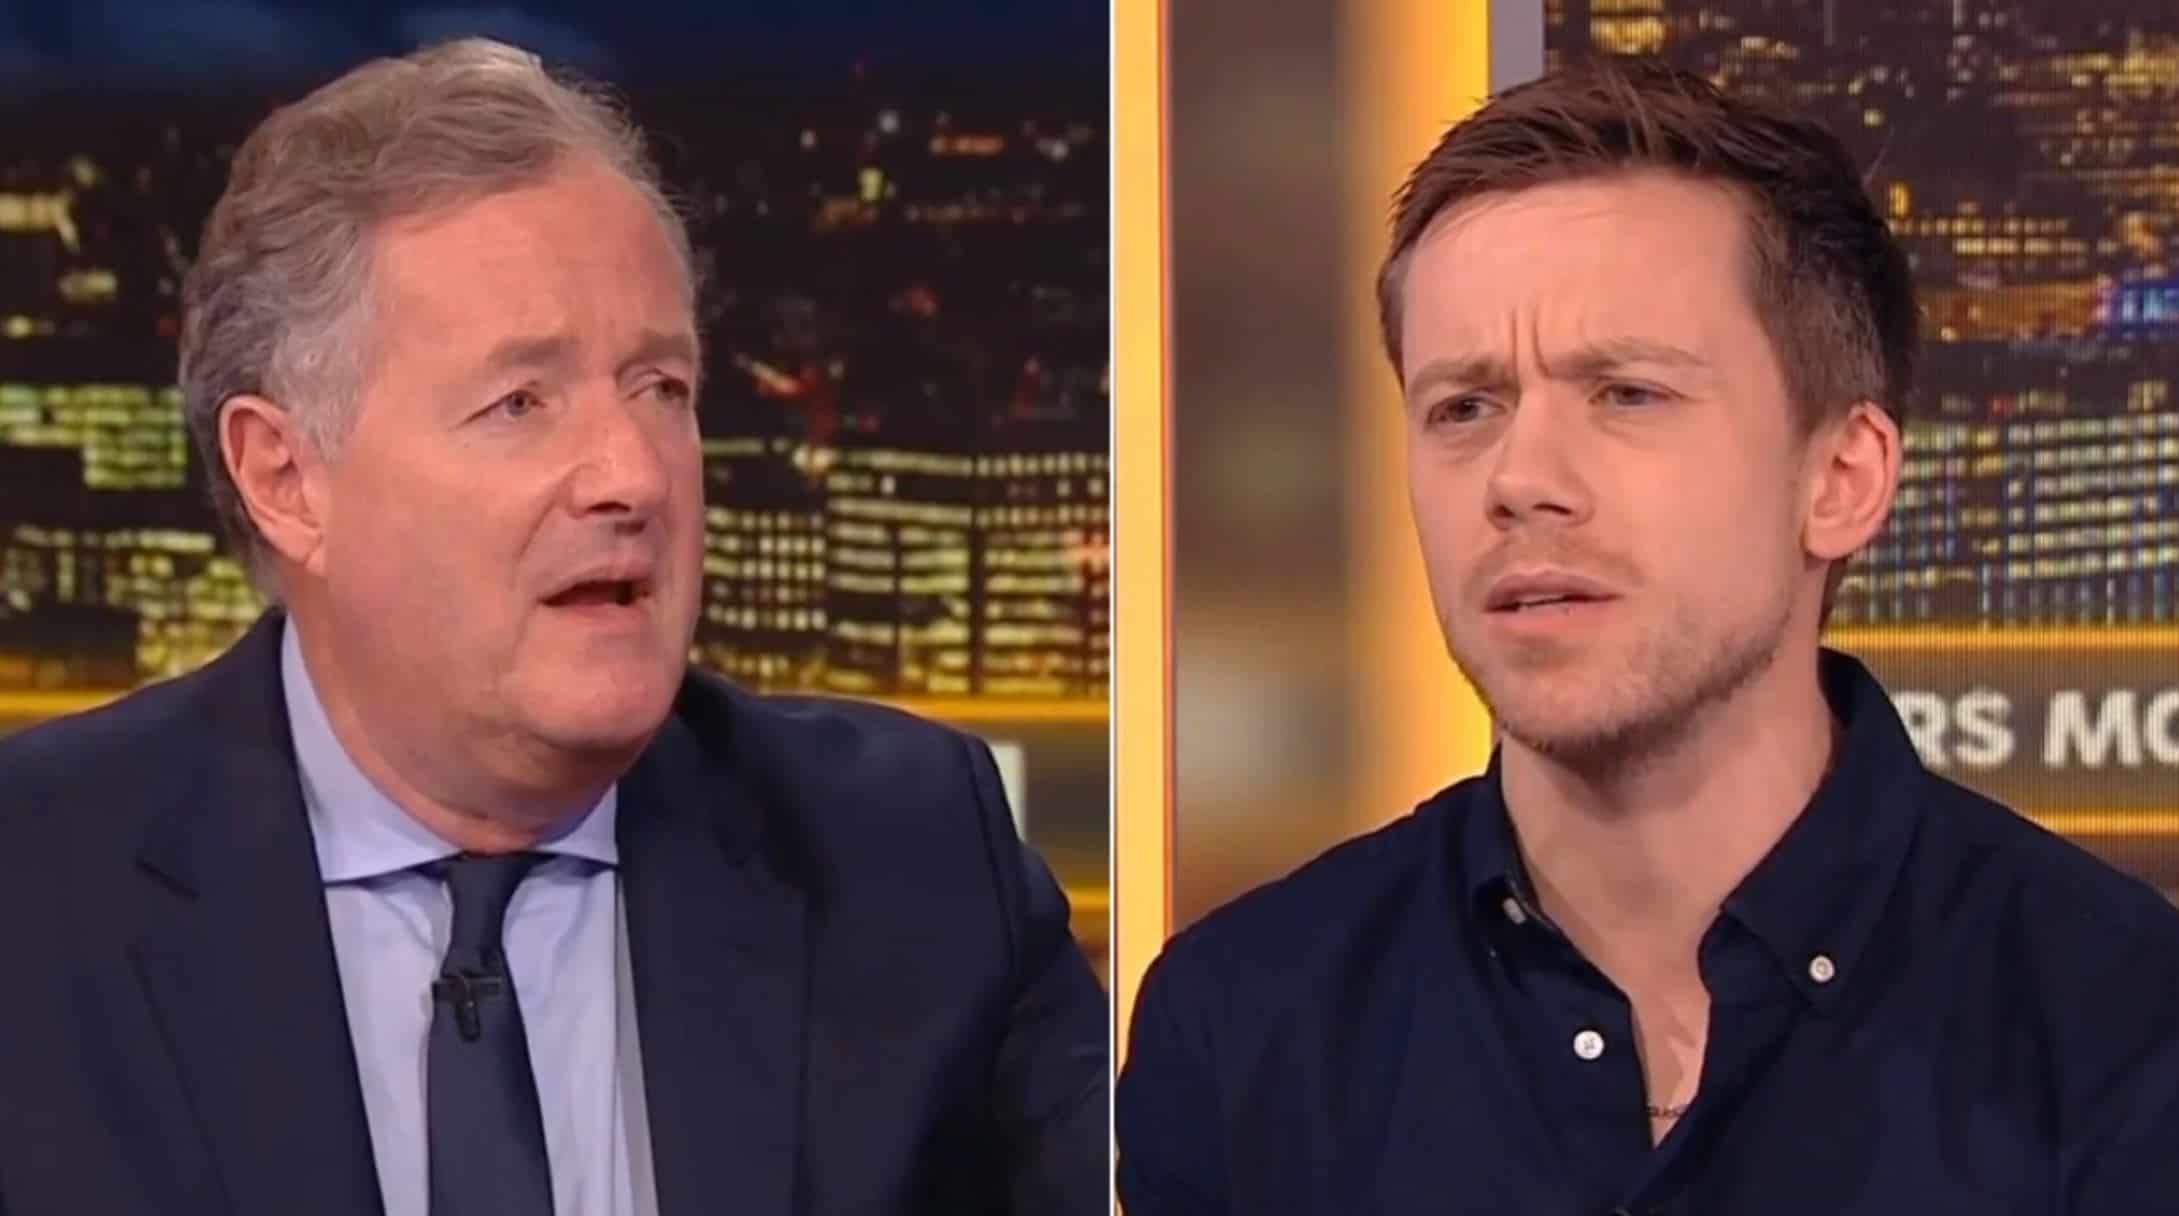 Owen Jones exposes Piers Morgan’s ‘hypocrisy’ over Gaza conflict